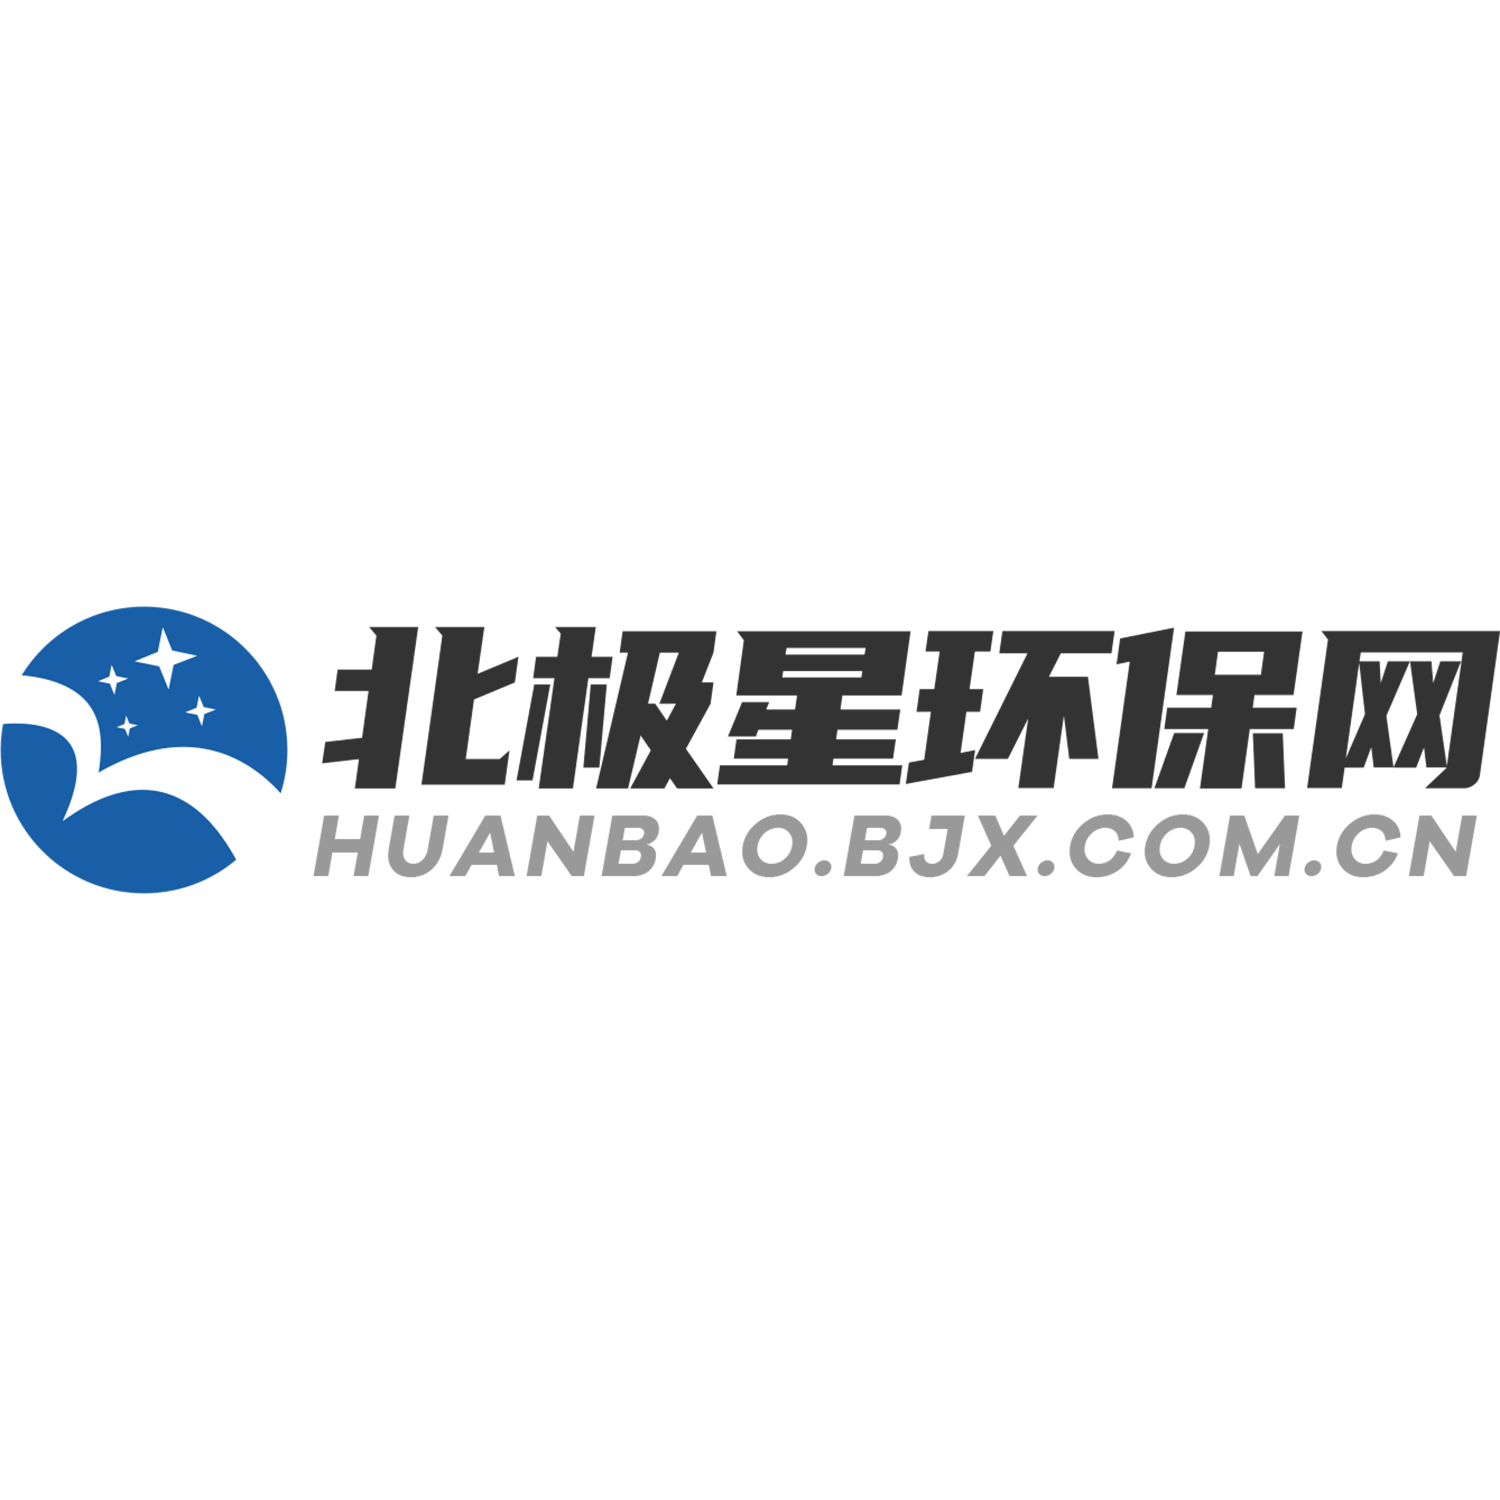 Huanbao.bjx.com.cn